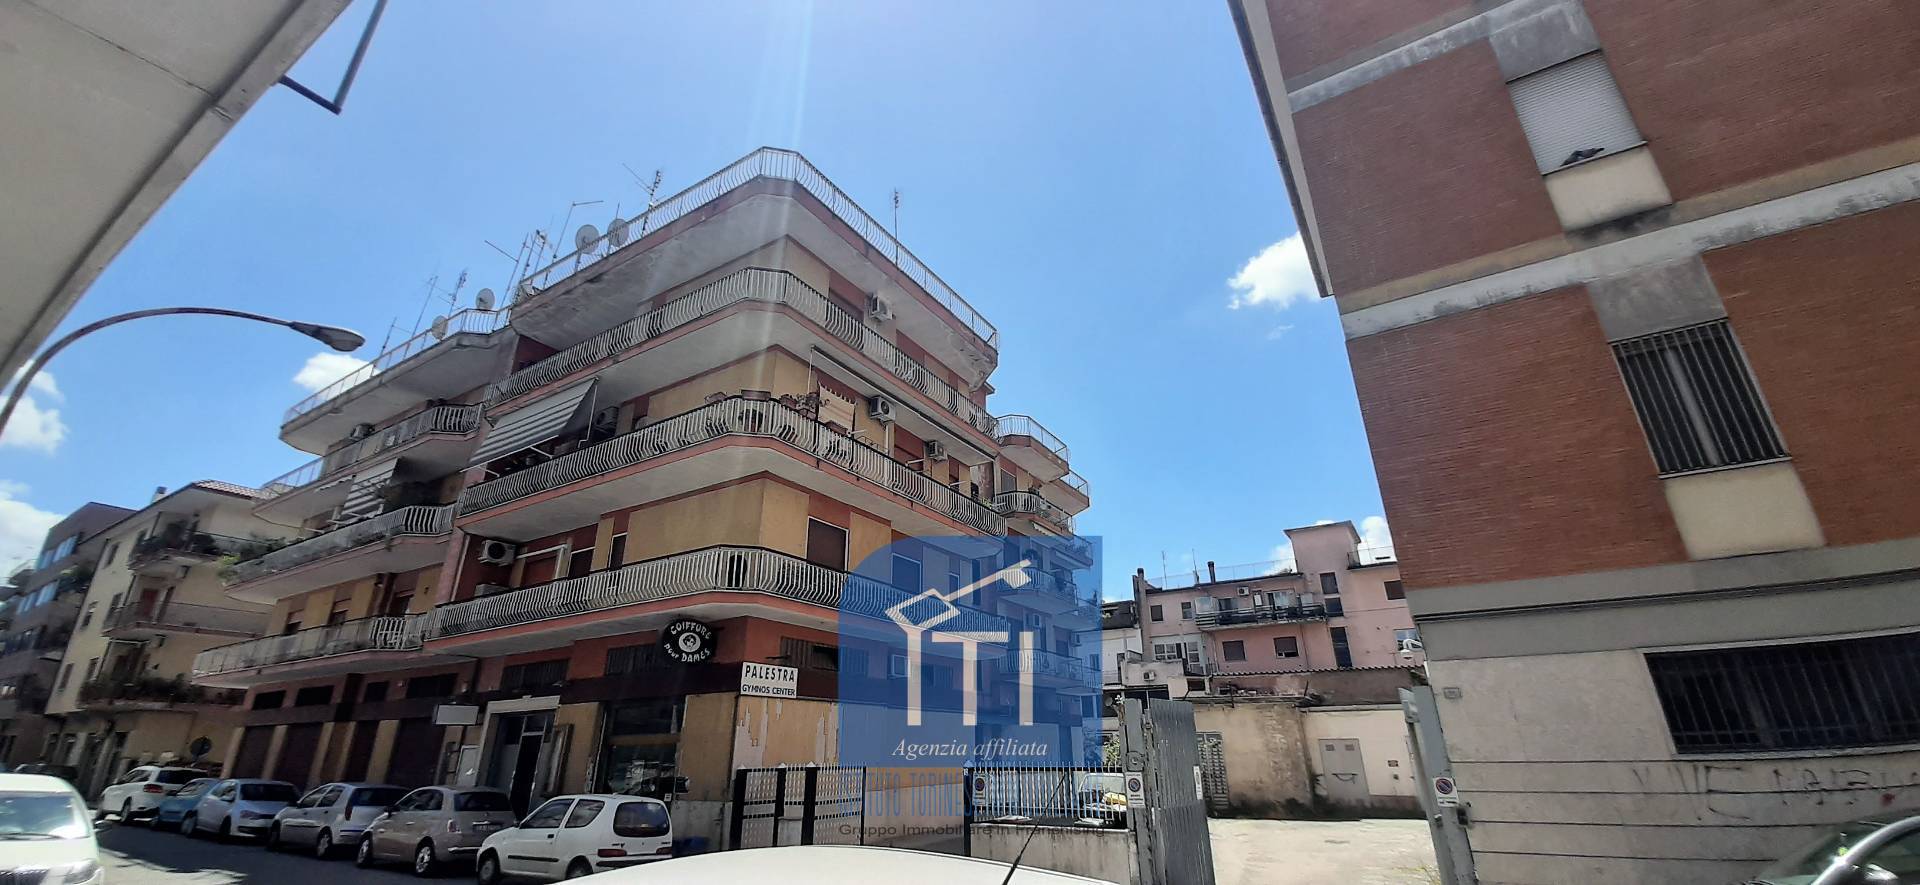 Appartamento in vendita a Cassino, 5 locali, prezzo € 159.000 | CambioCasa.it